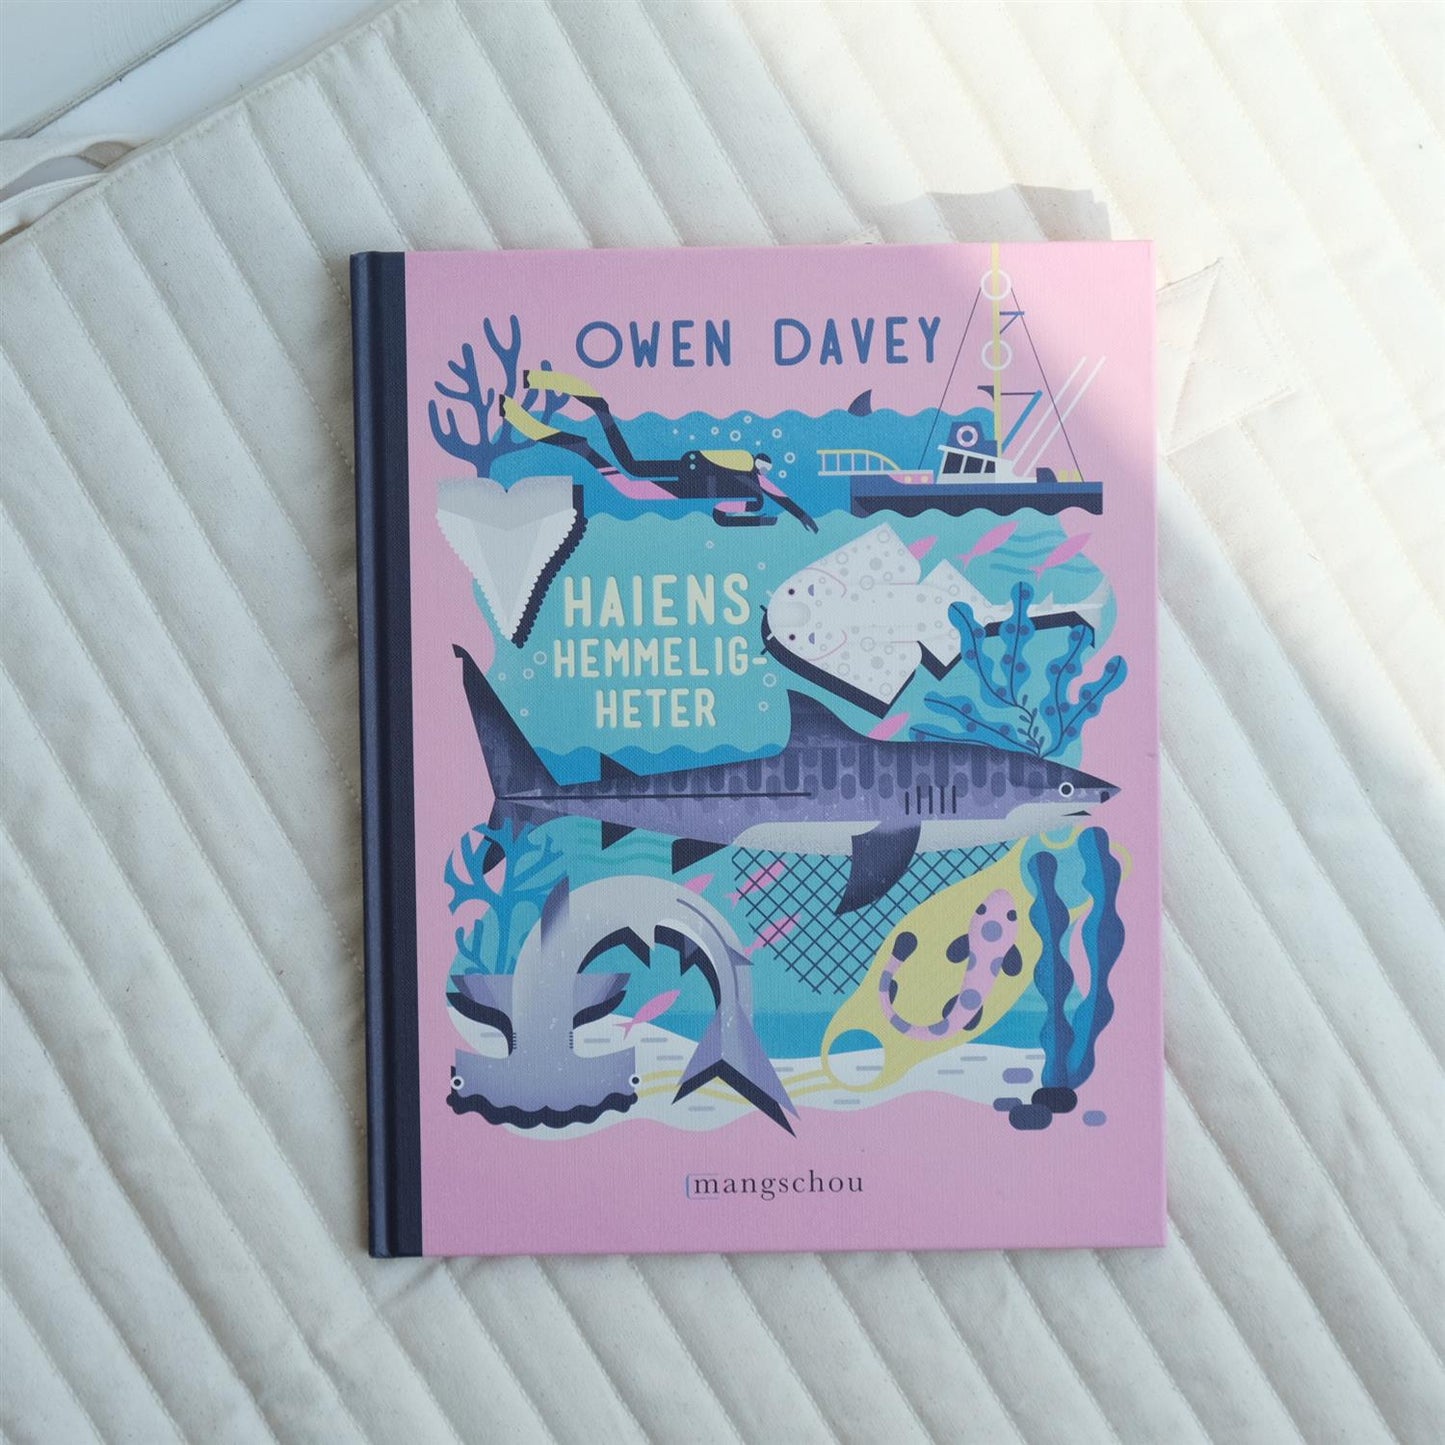 Haiens hemmeligheter - Owen Davey